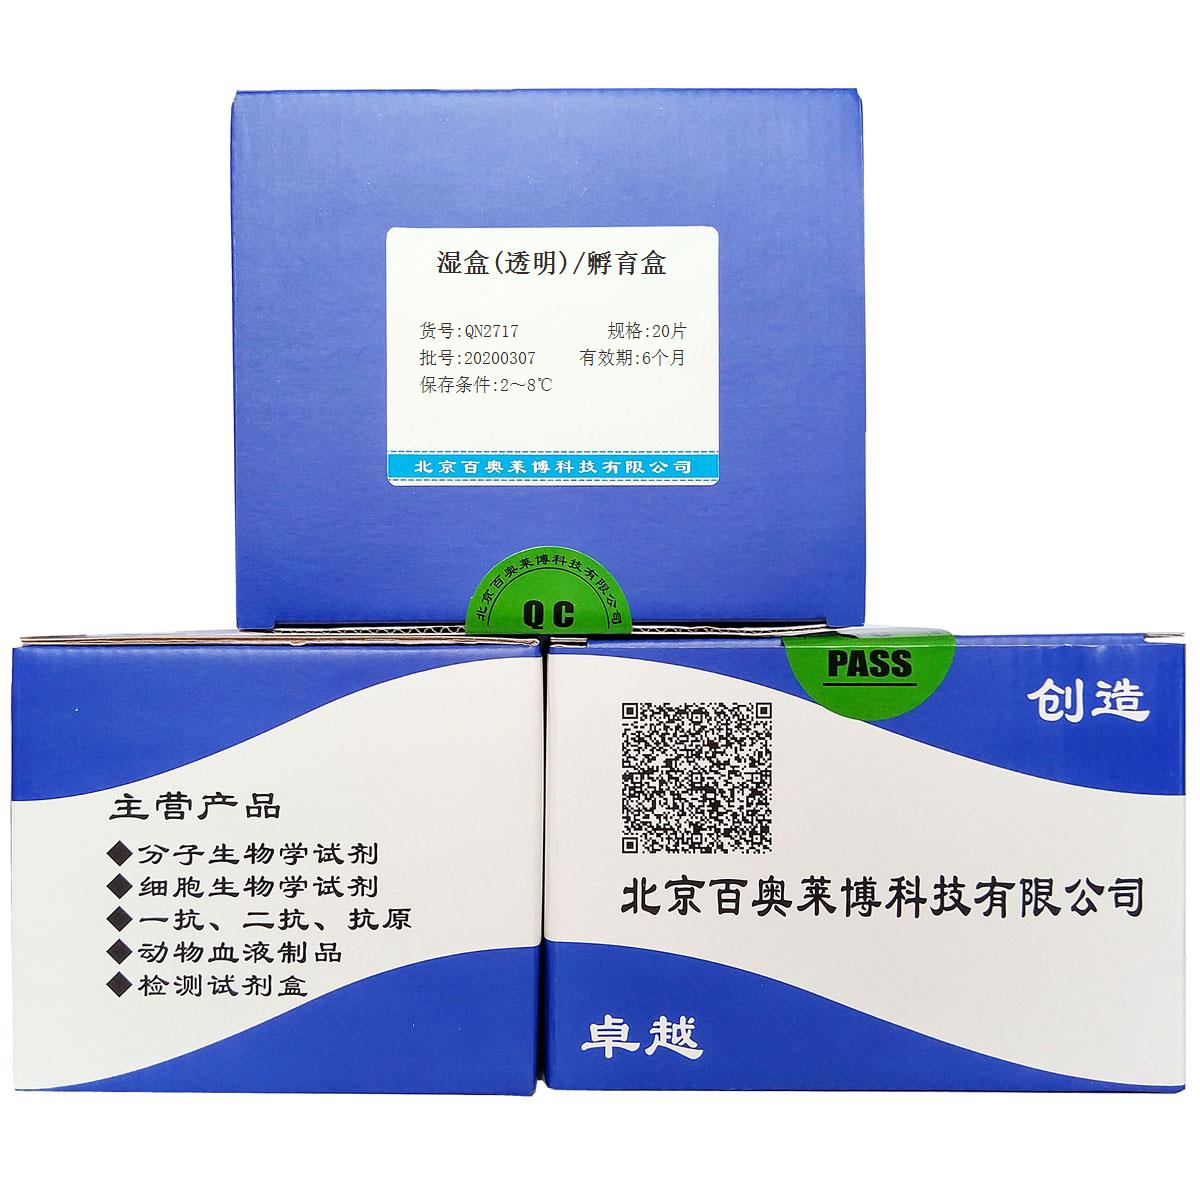 湿盒(透明)/孵育盒北京供应商